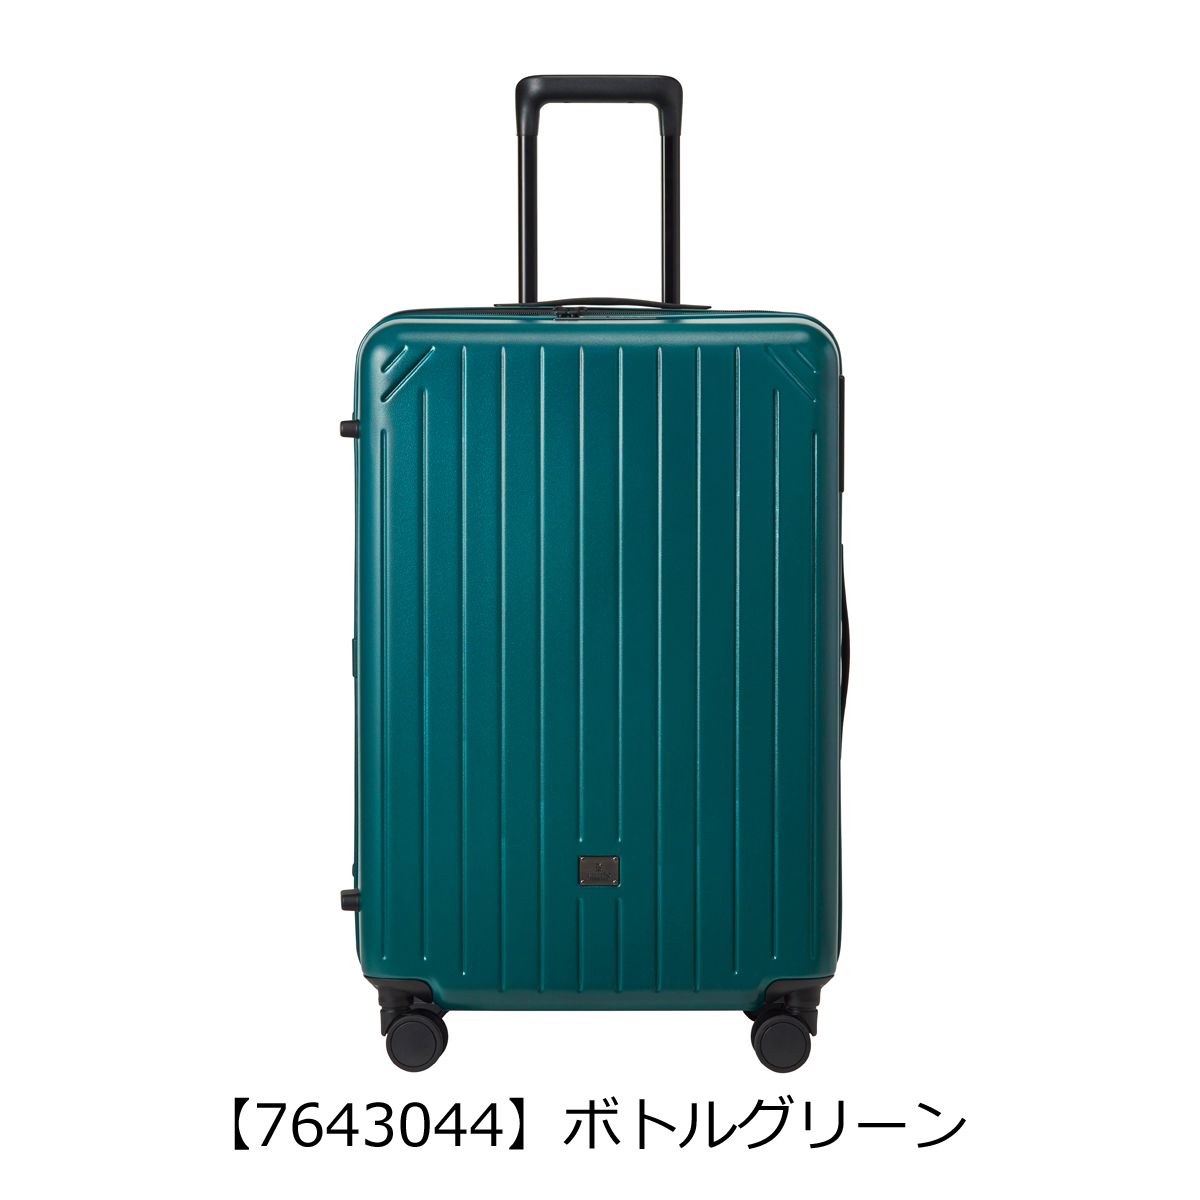 ミレスト スーツケース 81L 68.5cm 4.25kg ユーティリティ レディース 